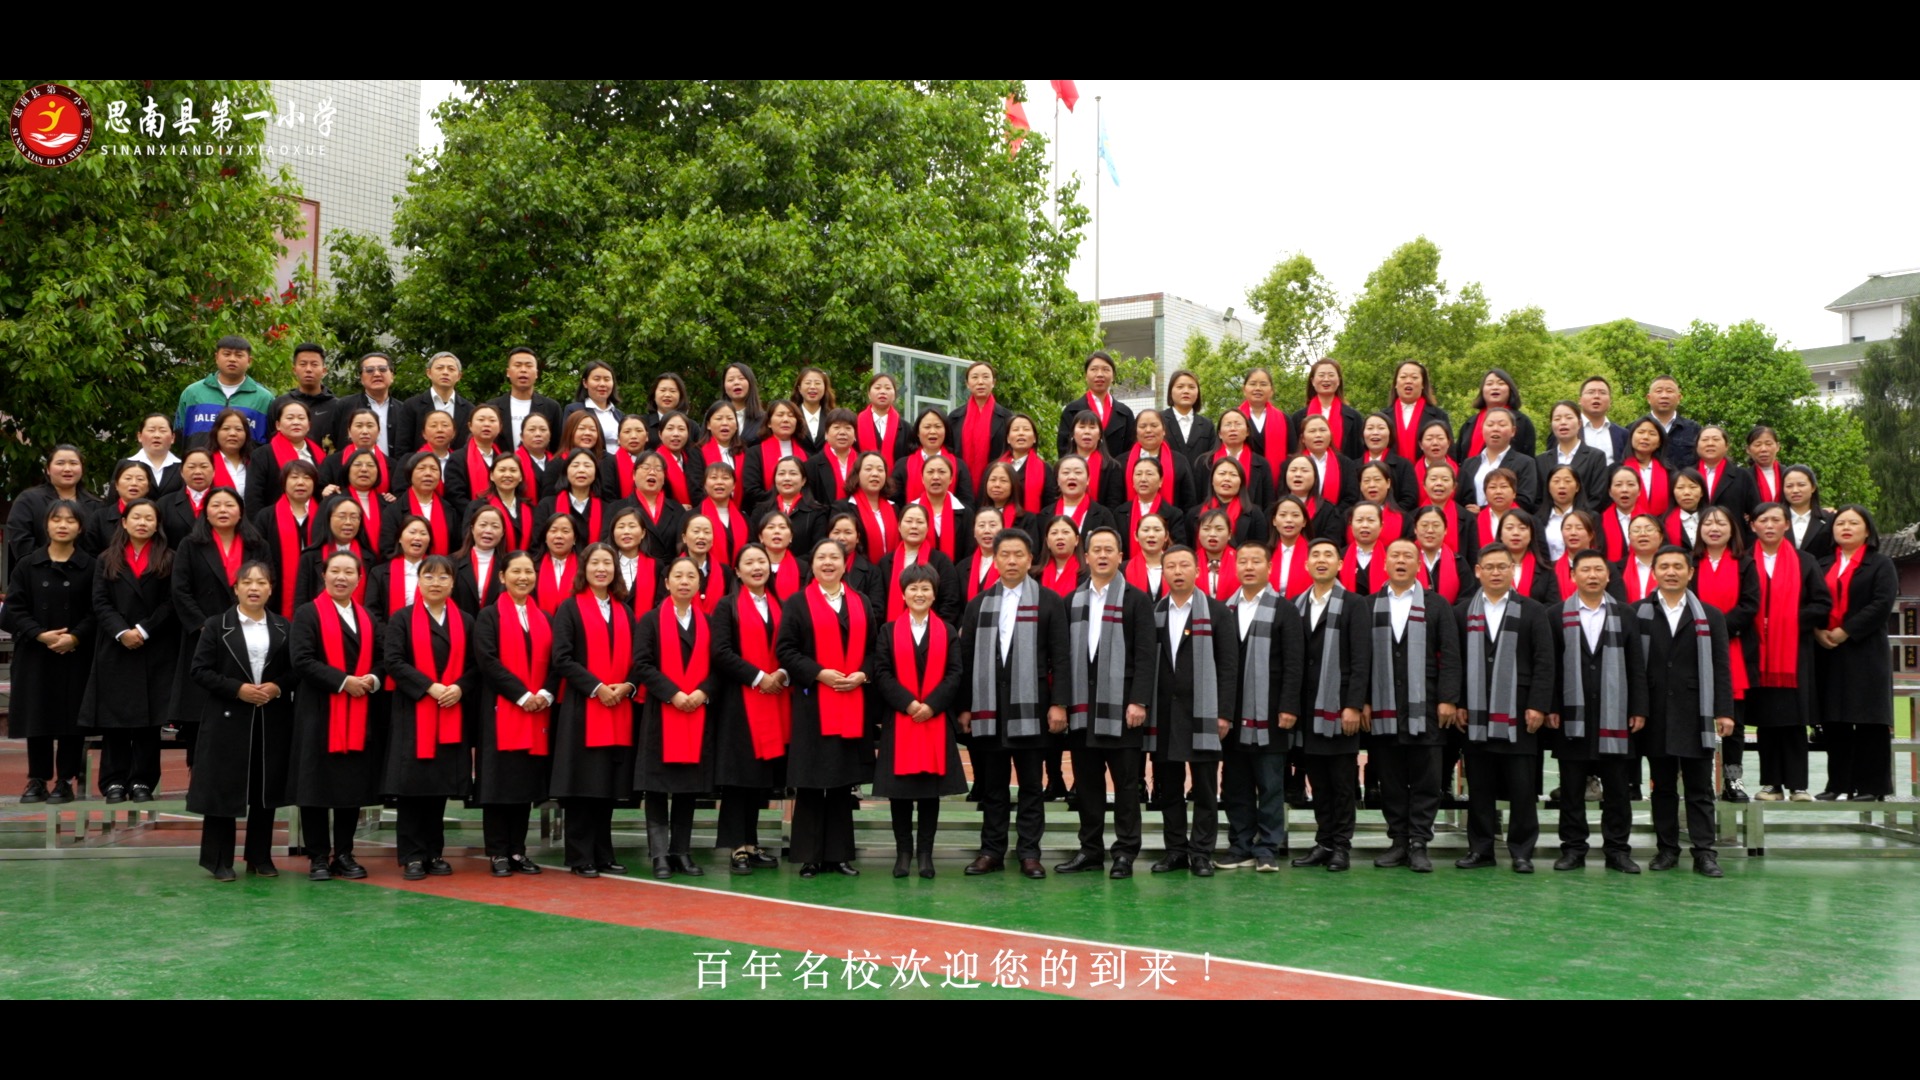 思南县第一小学庆祝120周年庆宣传视频